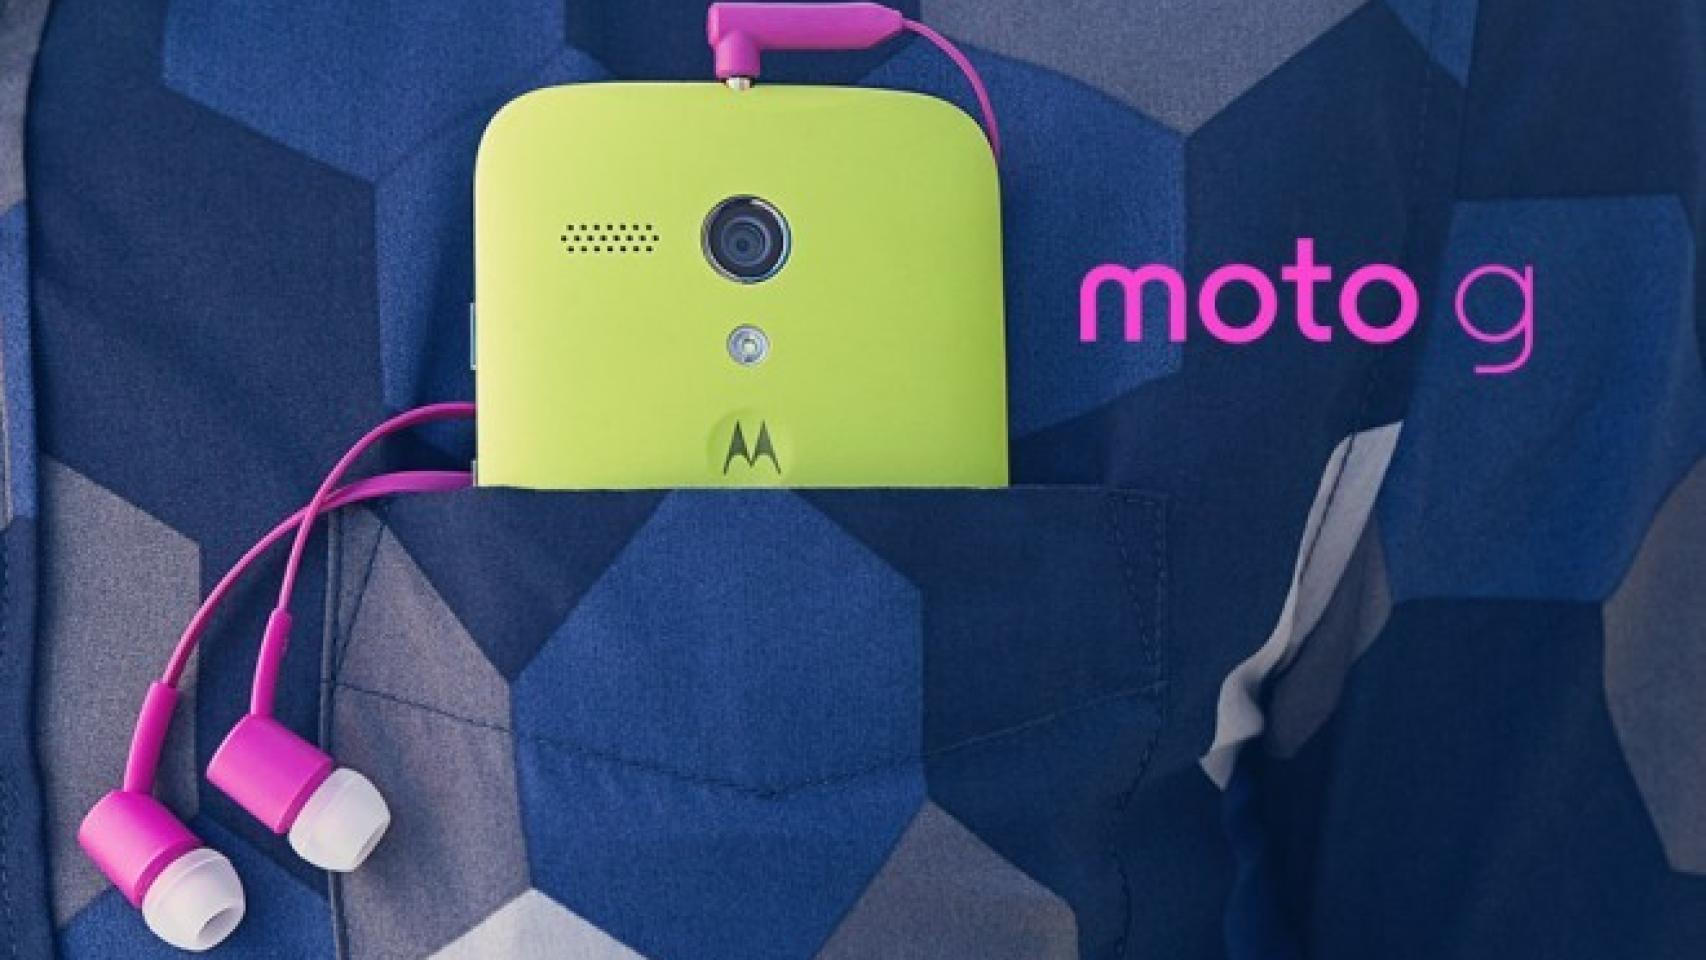 Motorola Moto G en España: Libre por 175 euros en Amazon. Ya puedes reservarlo